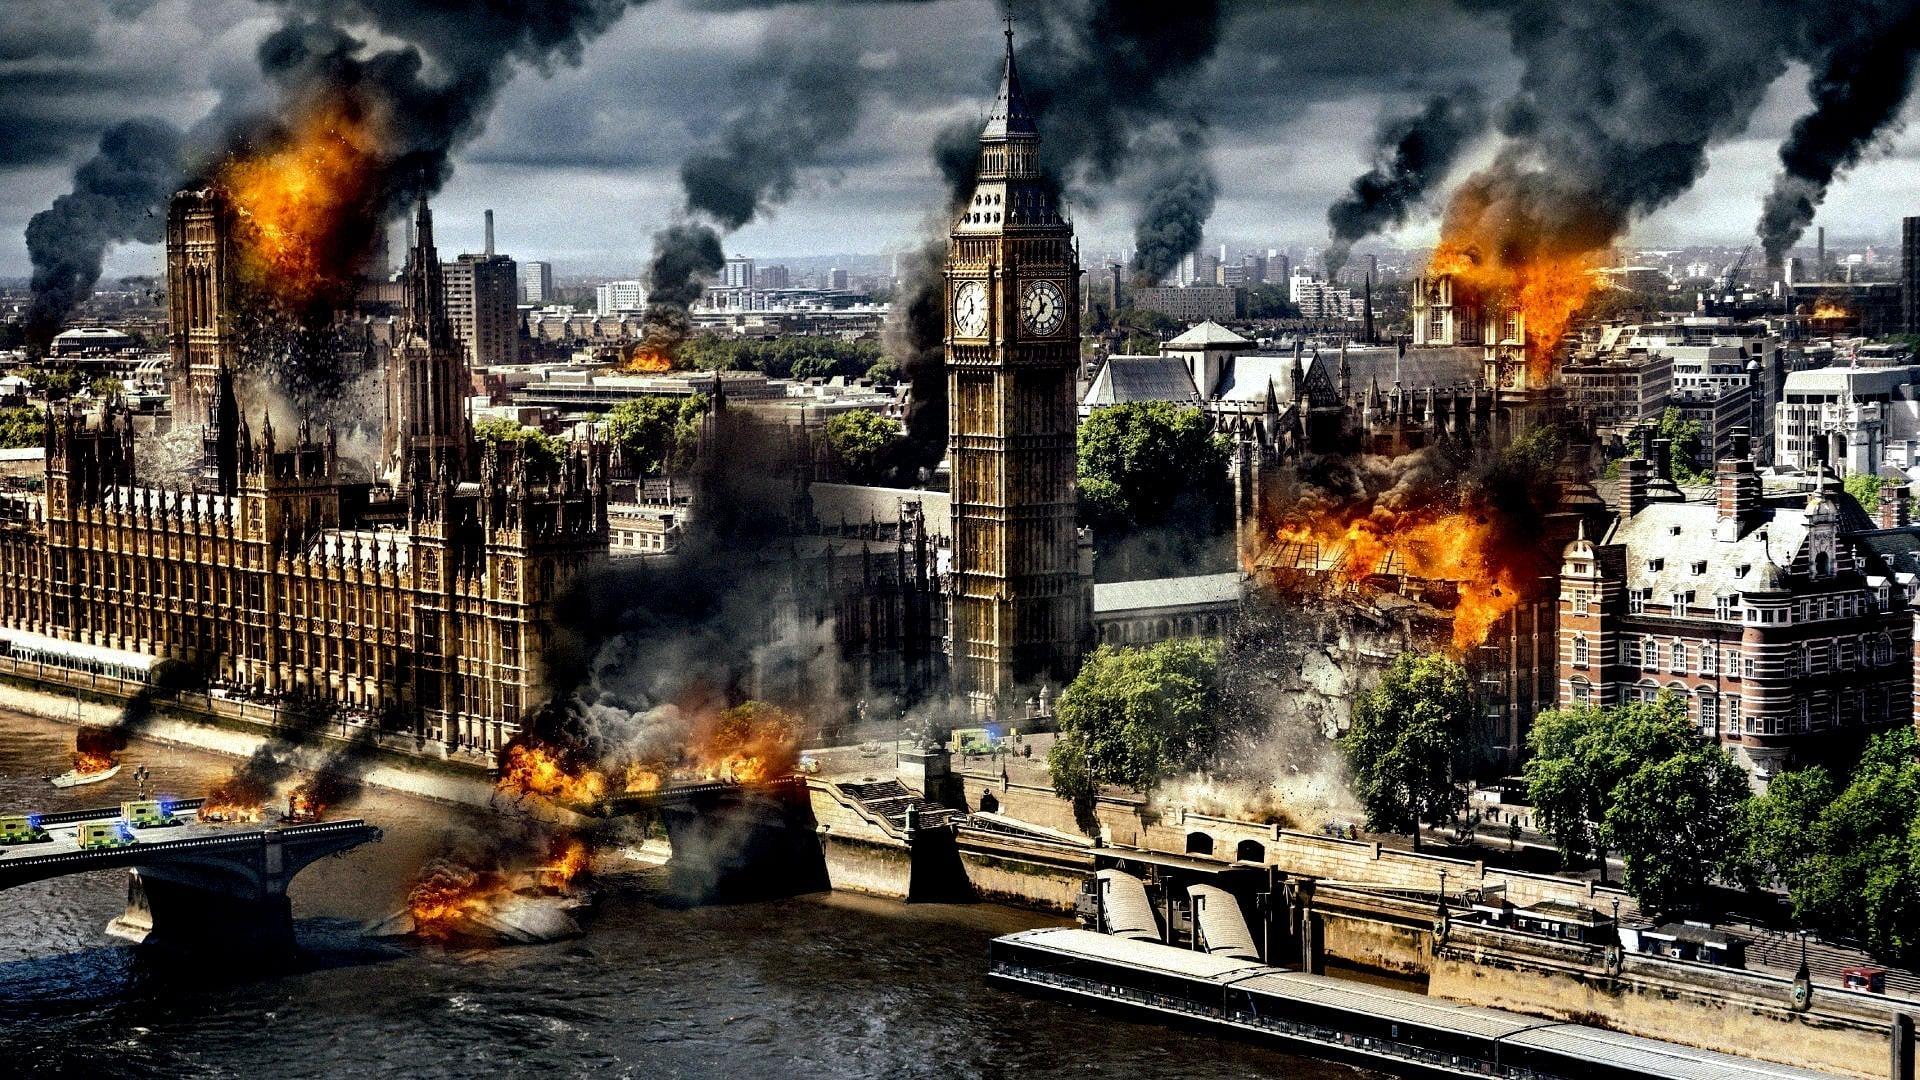 دانلود فیلم London Has Fallen 2016